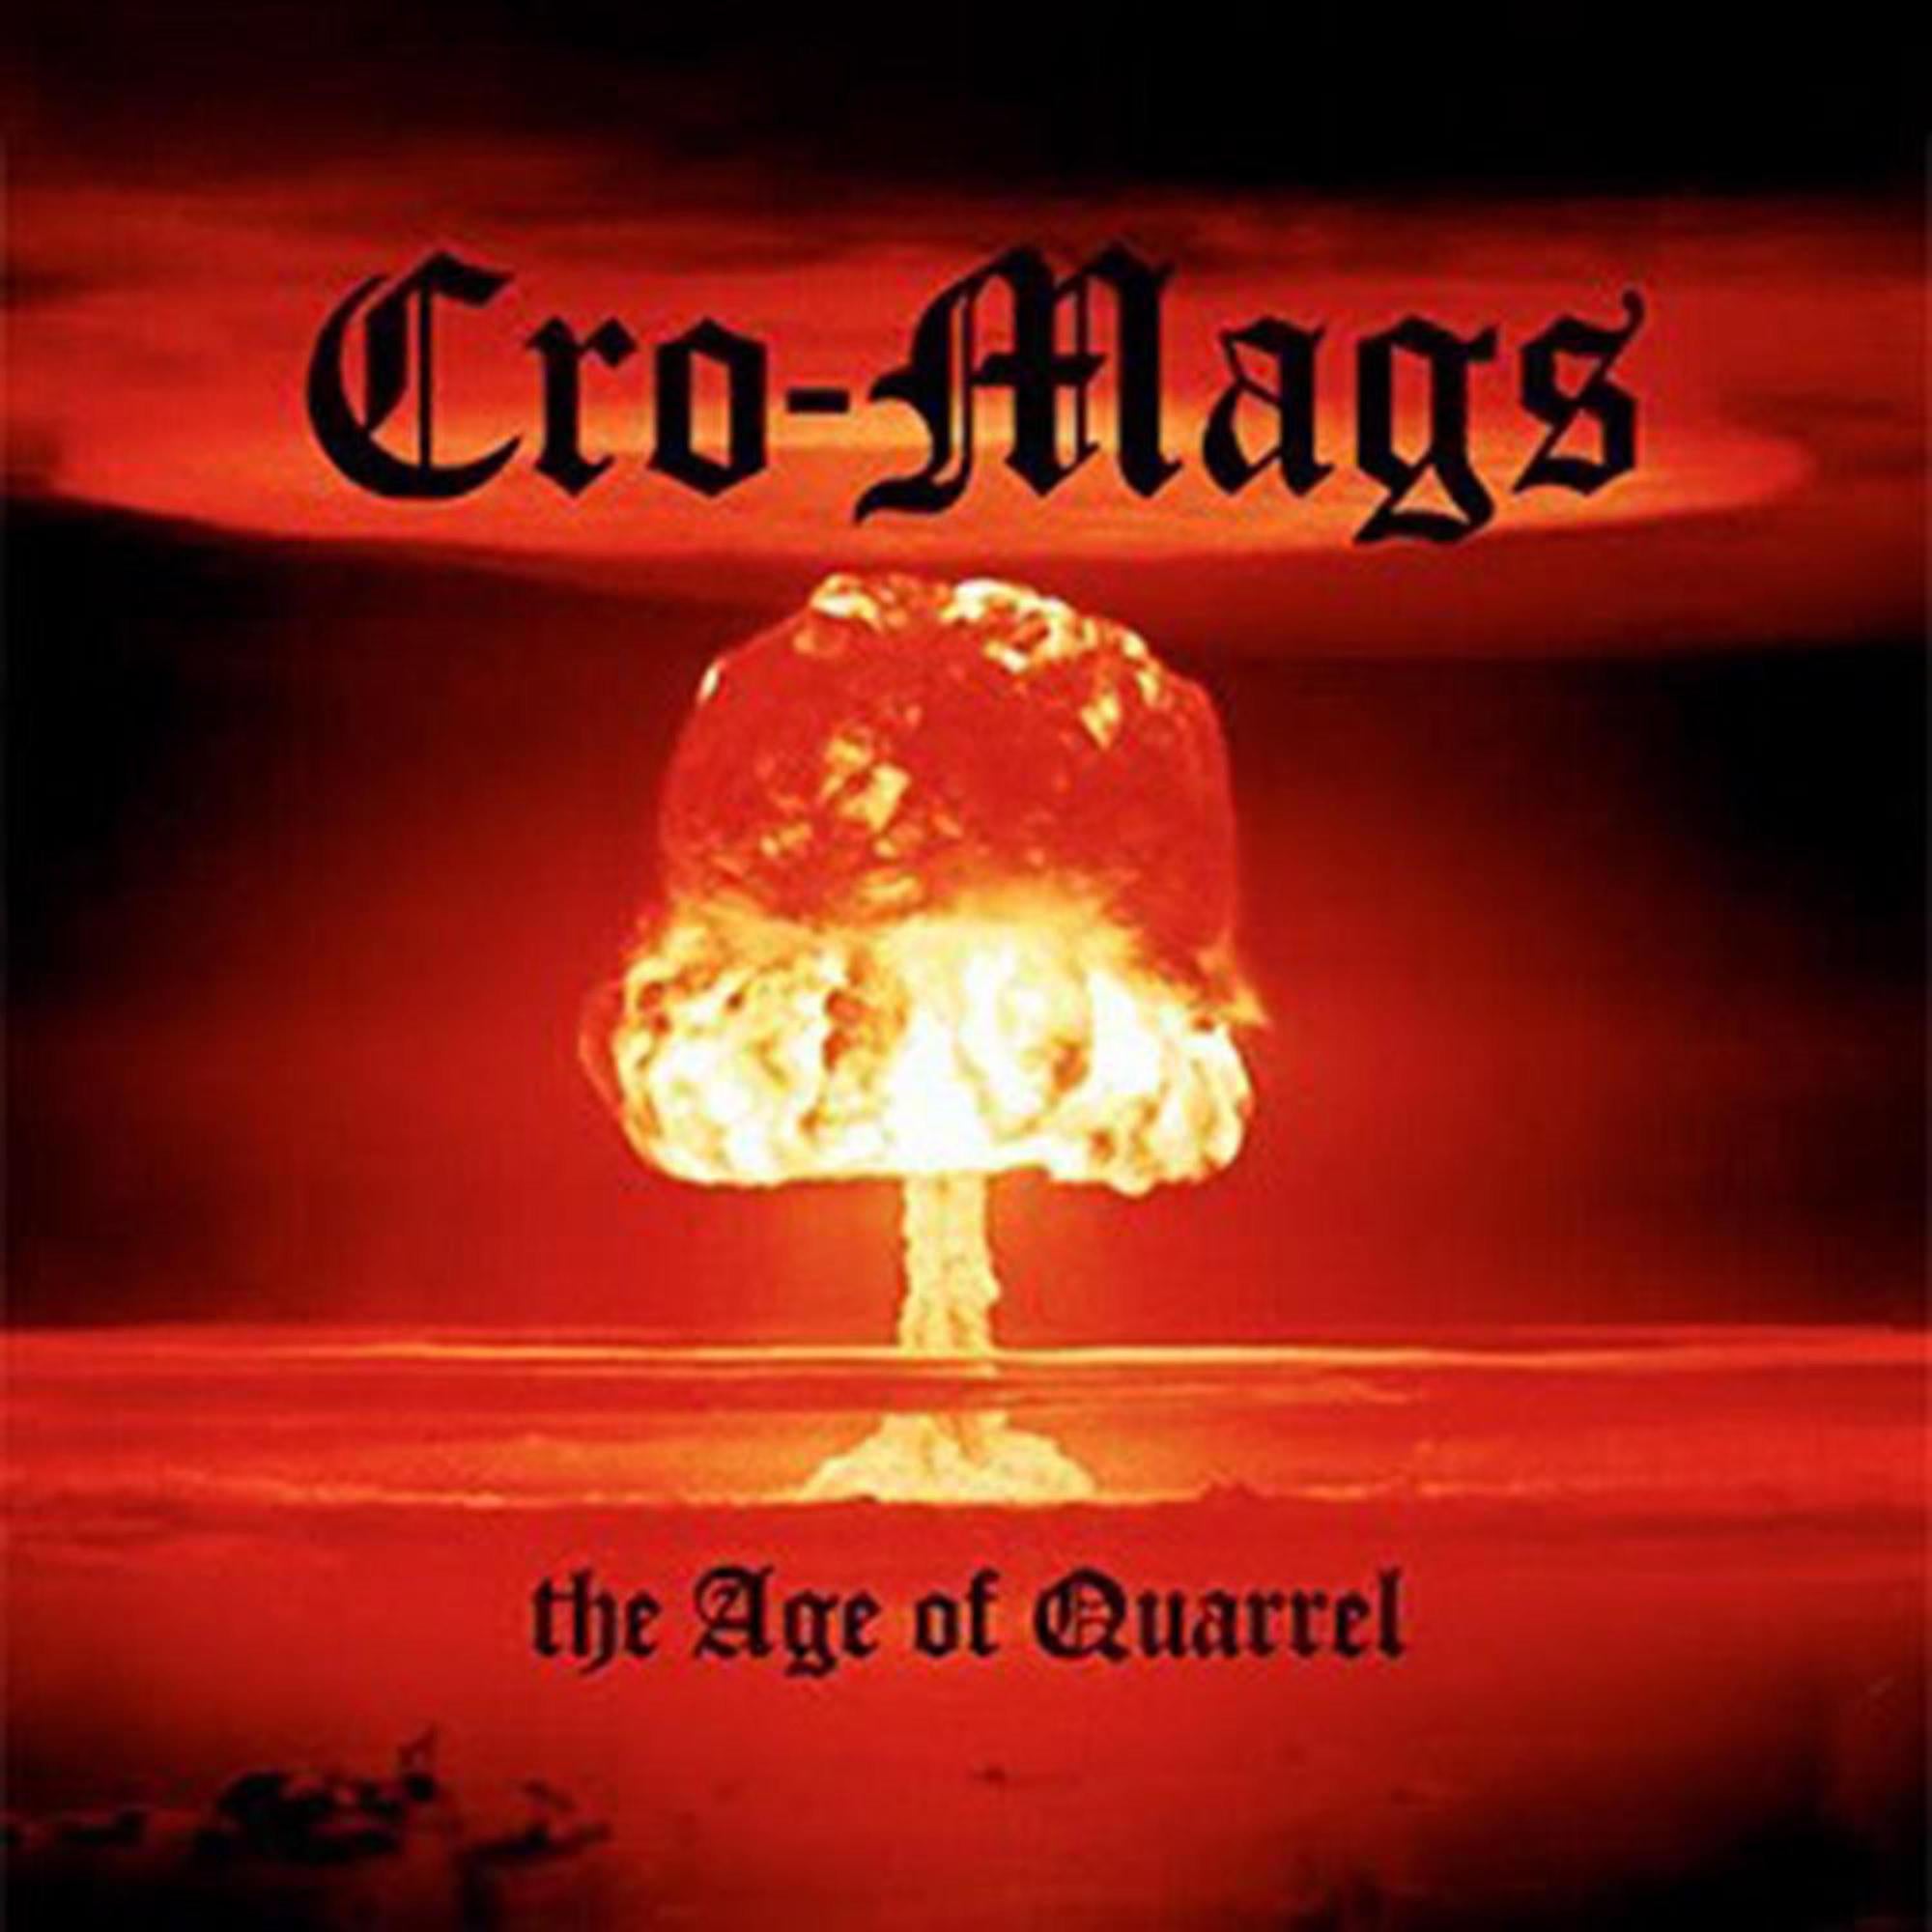 CRO-MAGS - THE AGE OF QUARREL Vinyl LP